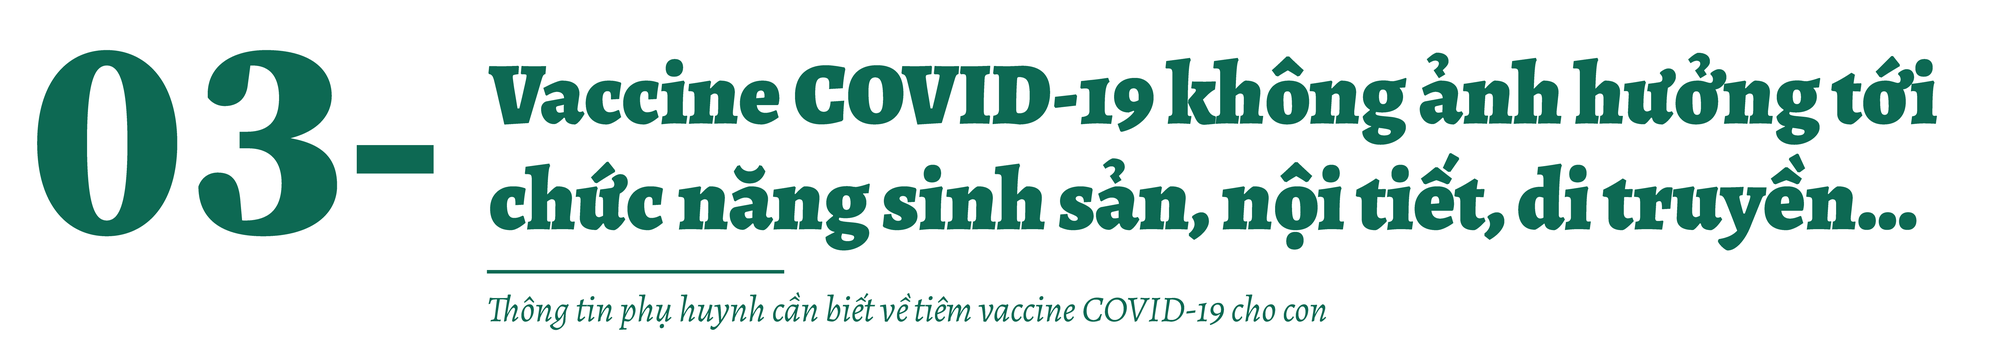 Tiêm vaccine COVID-19 cho trẻ từ 5-11 tuổi: Giải đáp mọi thắc mắc của phụ huynh - Ảnh 4.